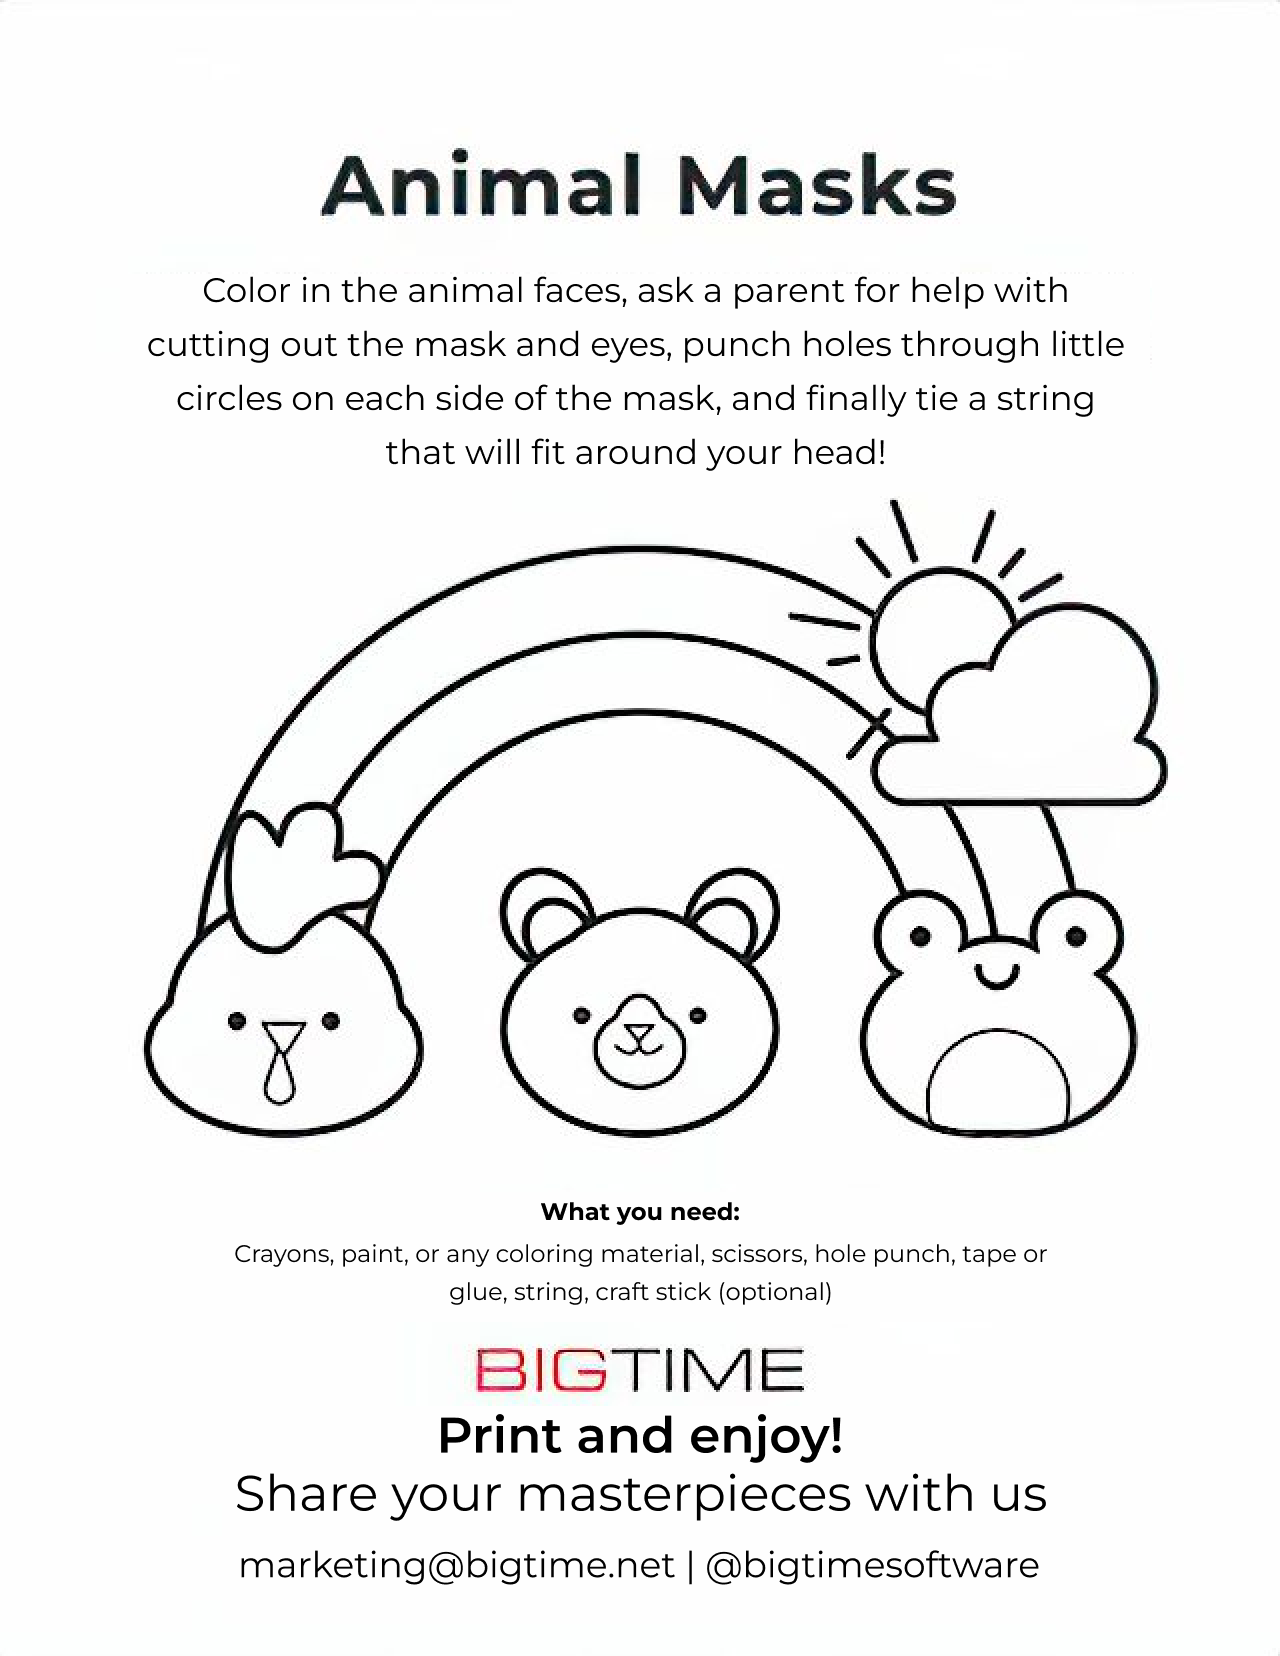 BigTime Fun Animal Masks